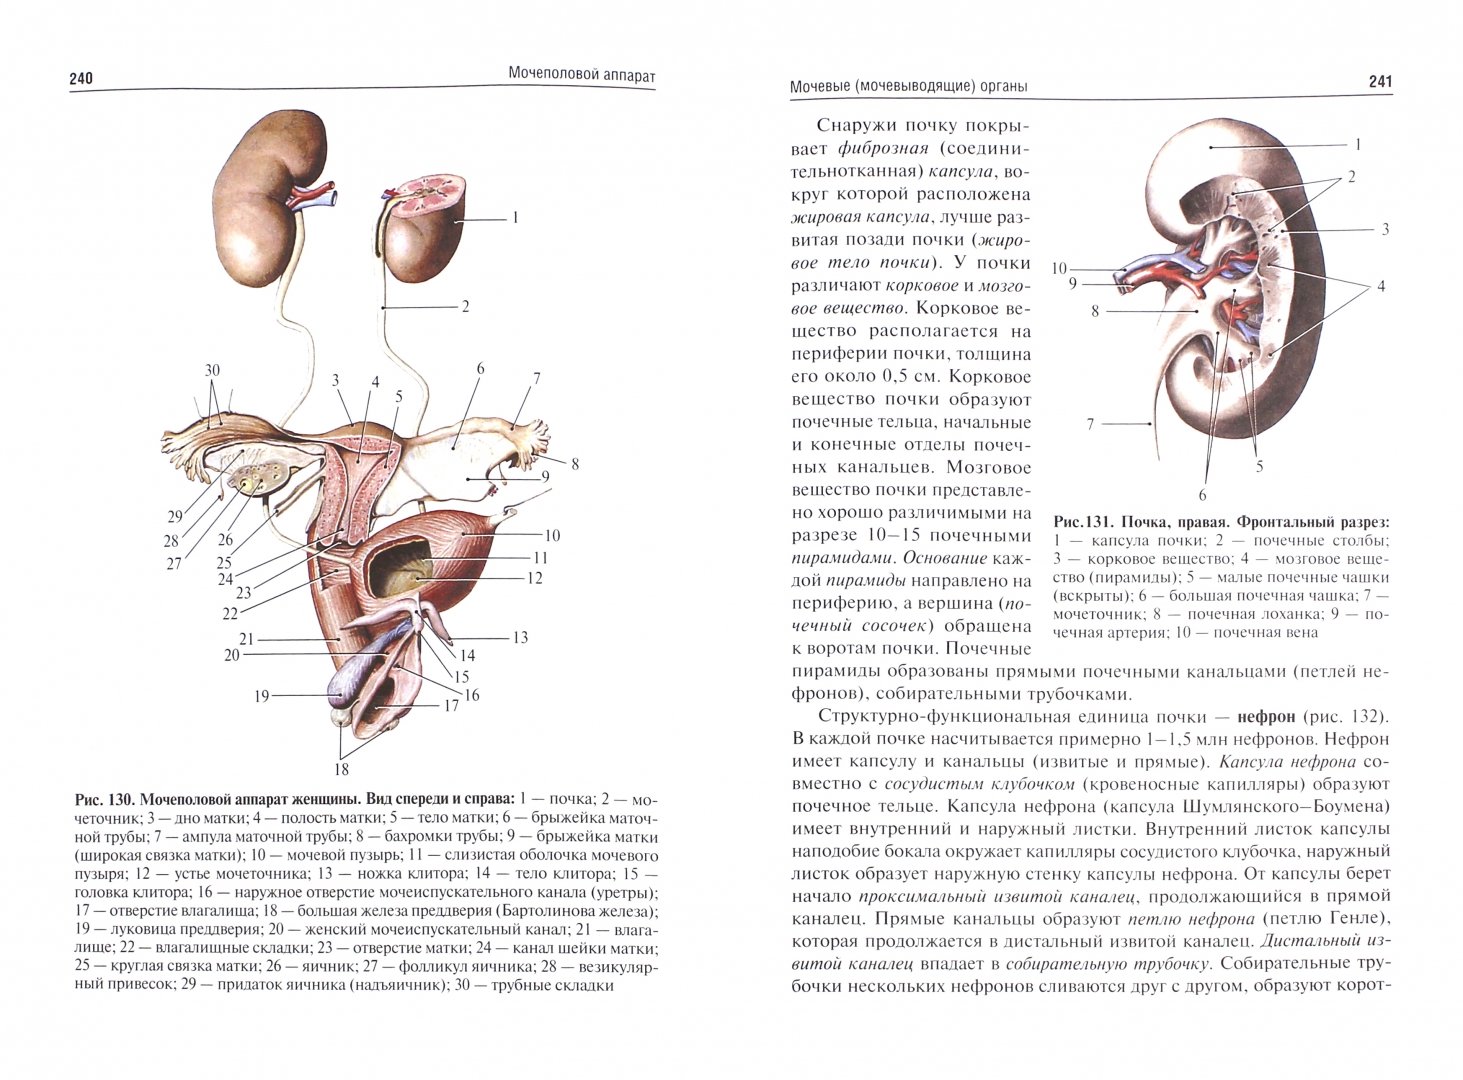 Иллюстрация 1 из 8 для Анатомия человека. Учебник для фармацевтических факультетов - Сапин, Никитюк, Клочкова | Лабиринт - книги. Источник: Лабиринт